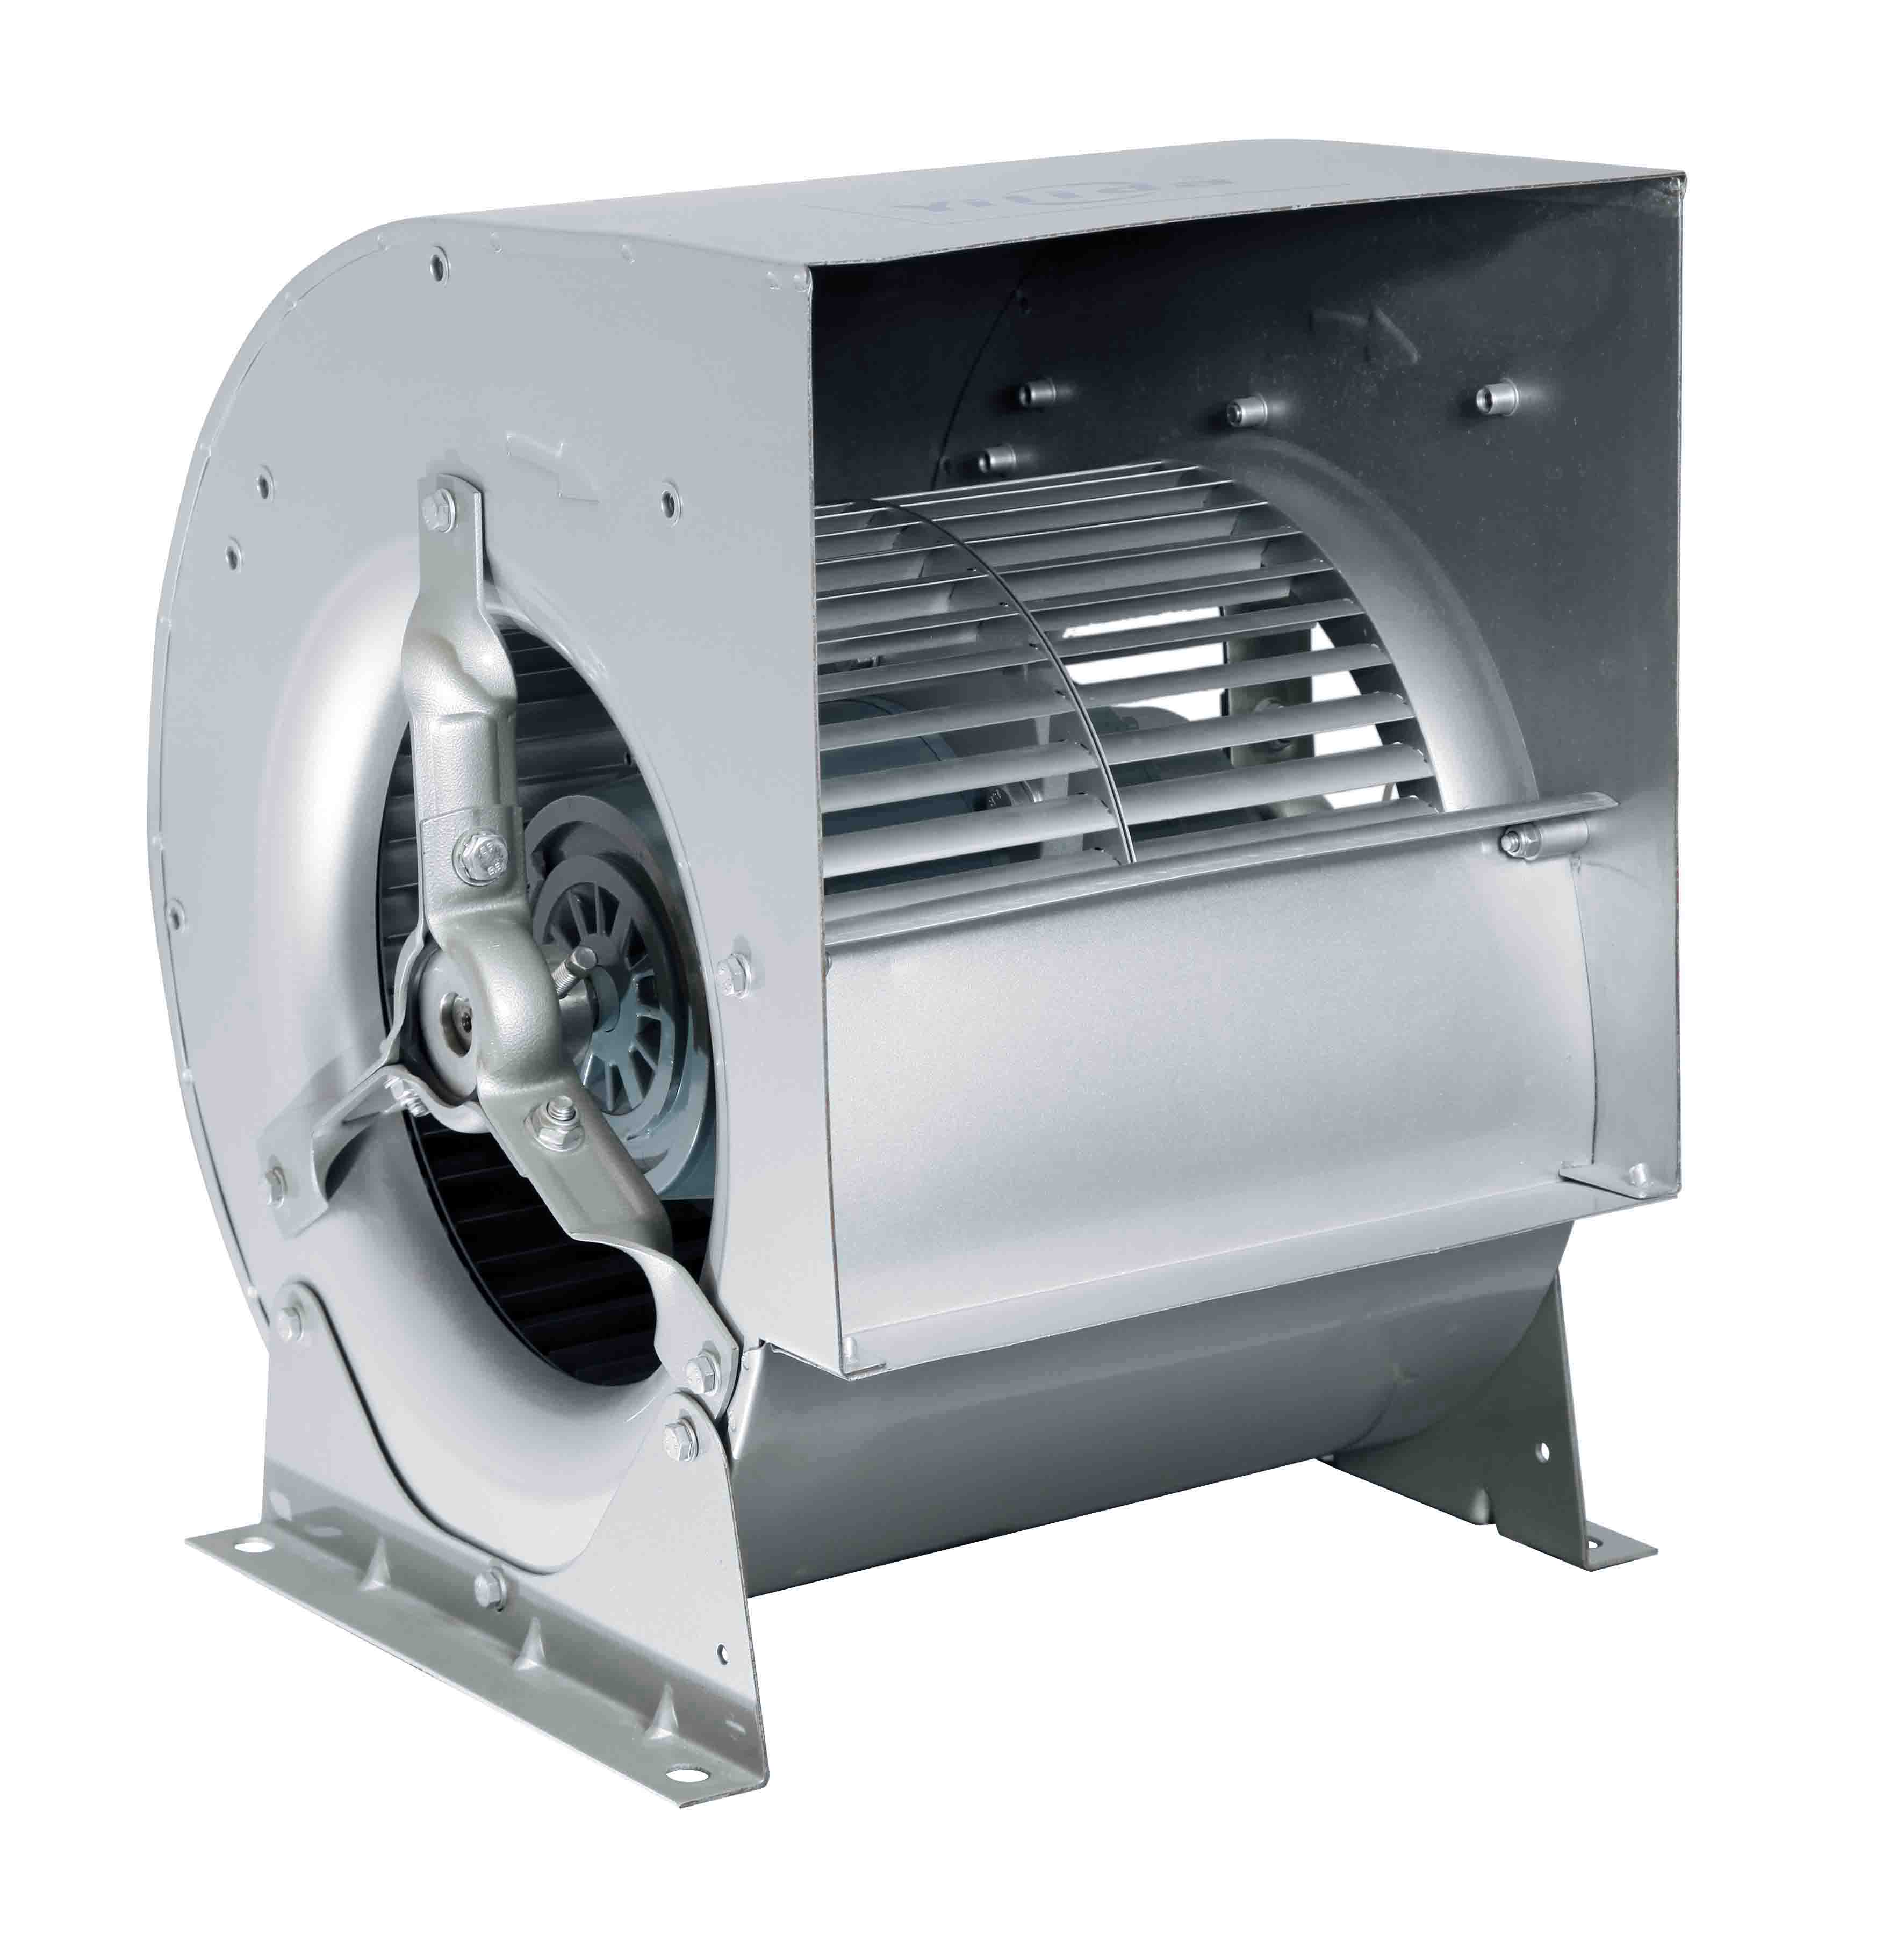 Visokokvalitetni prednji centrifugalni ventilator sa dvostrukim ulazom